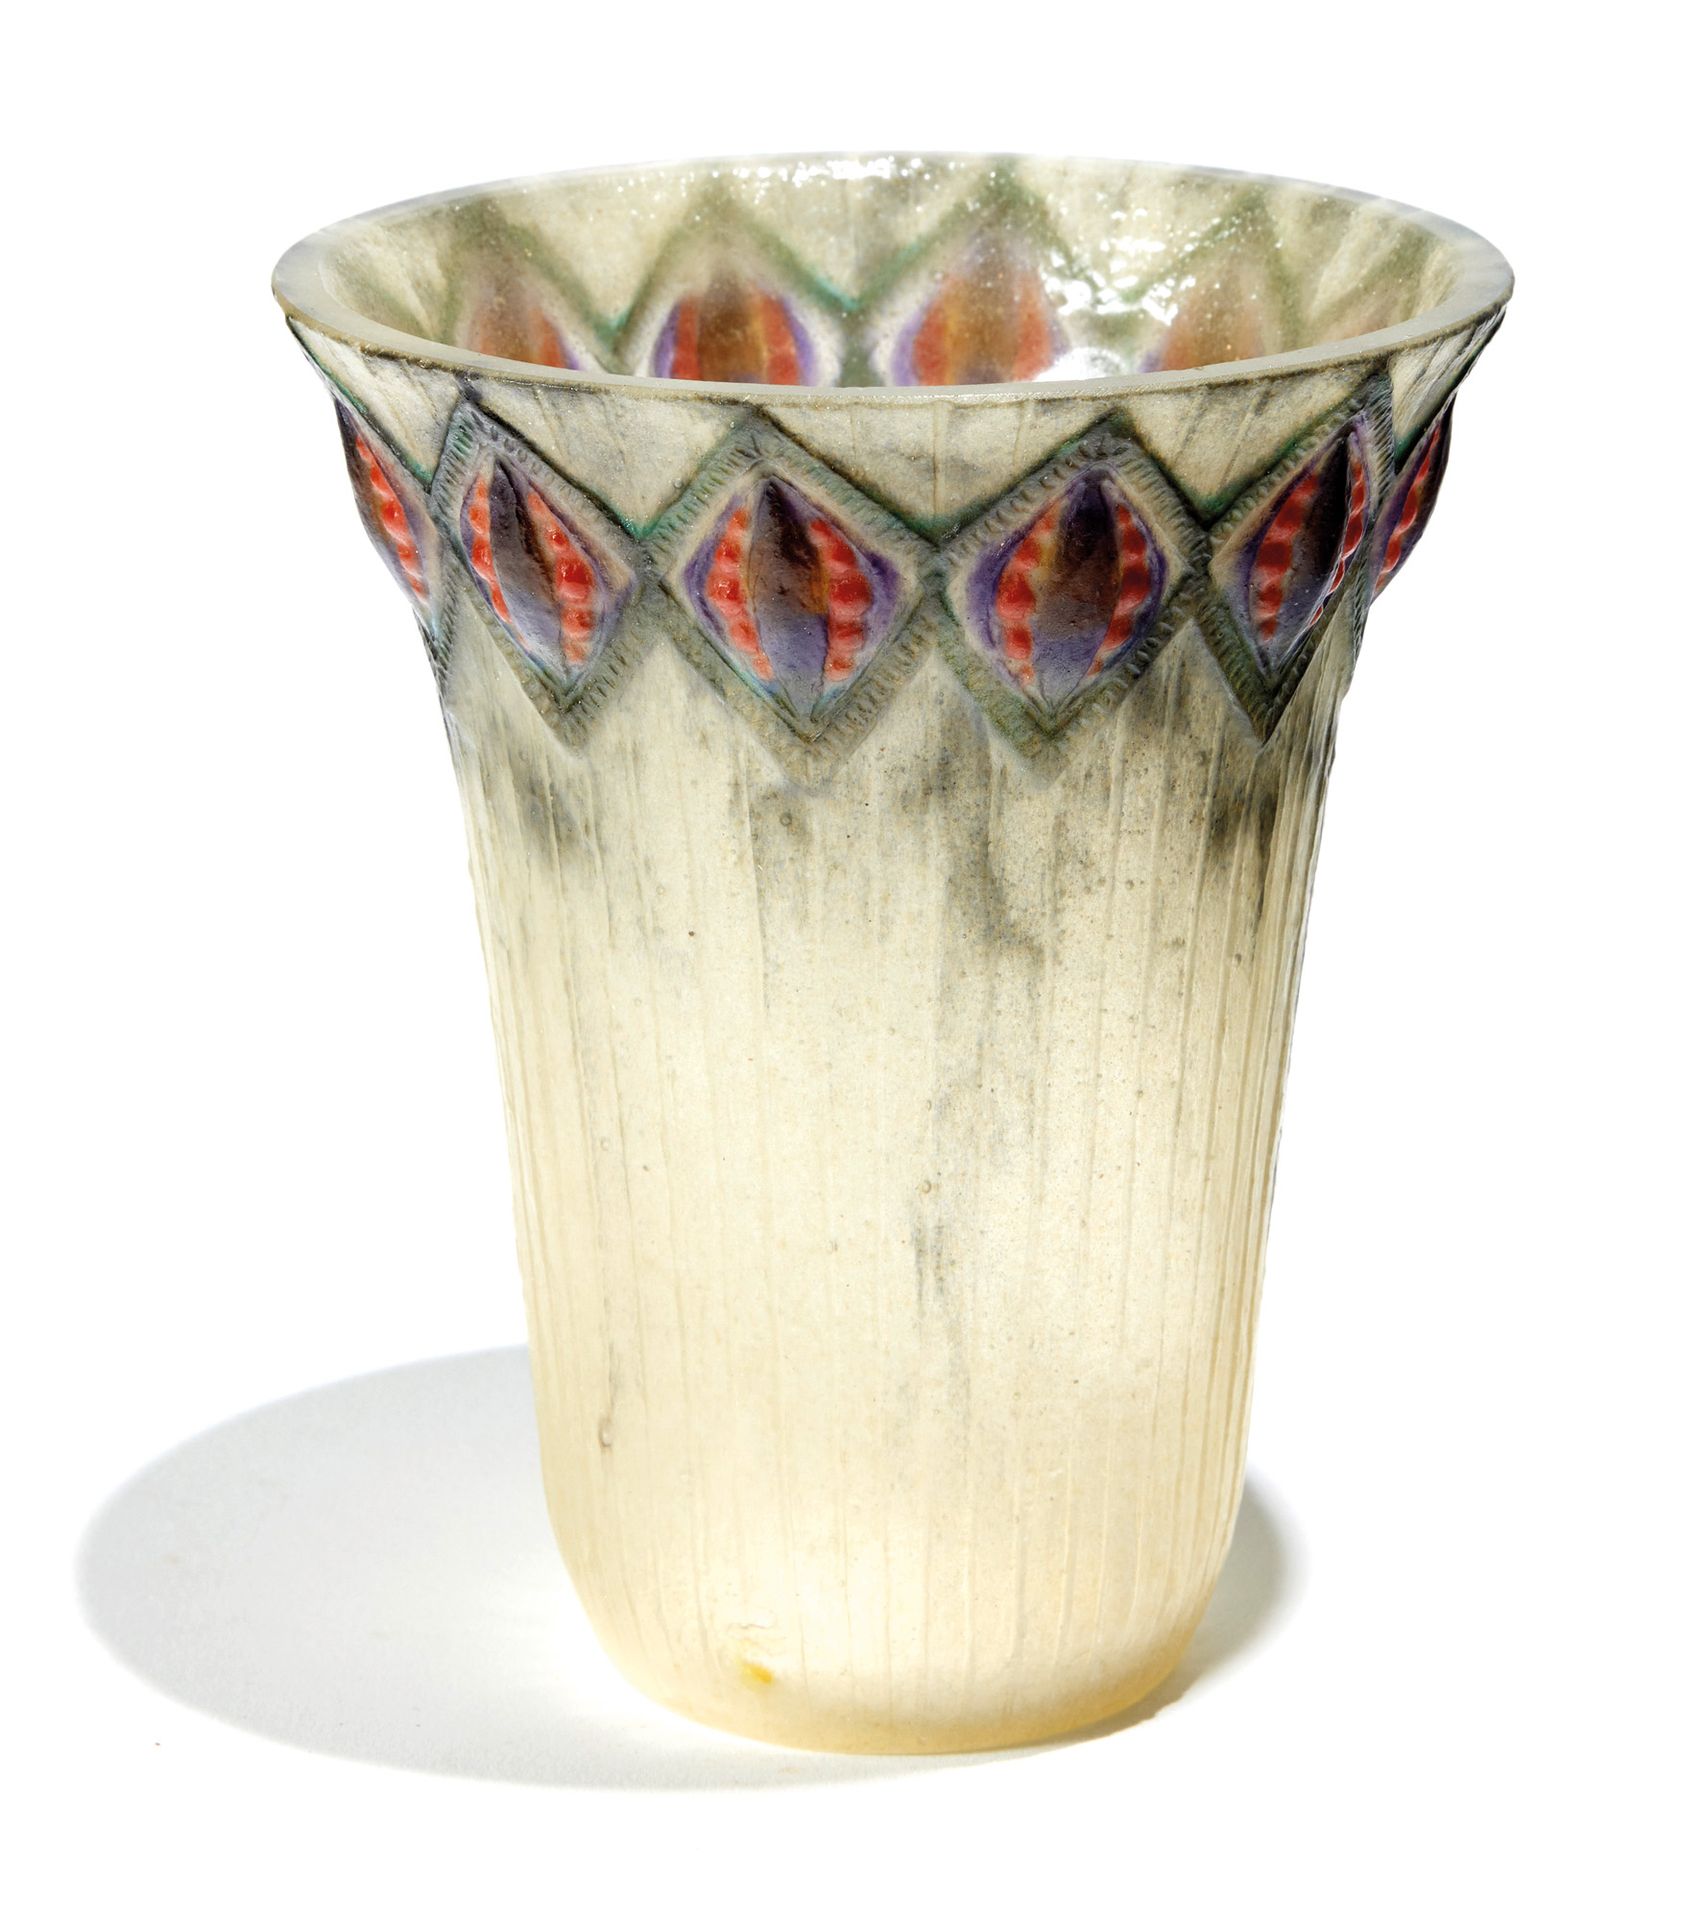 Gabriel ARGY-ROUSSEAU (1885-1953) 加布里埃尔-阿尔吉-卢梭(1885-1953)

喇叭形花瓶，颈部呈喇叭状，在半透明斑驳的背&hellip;